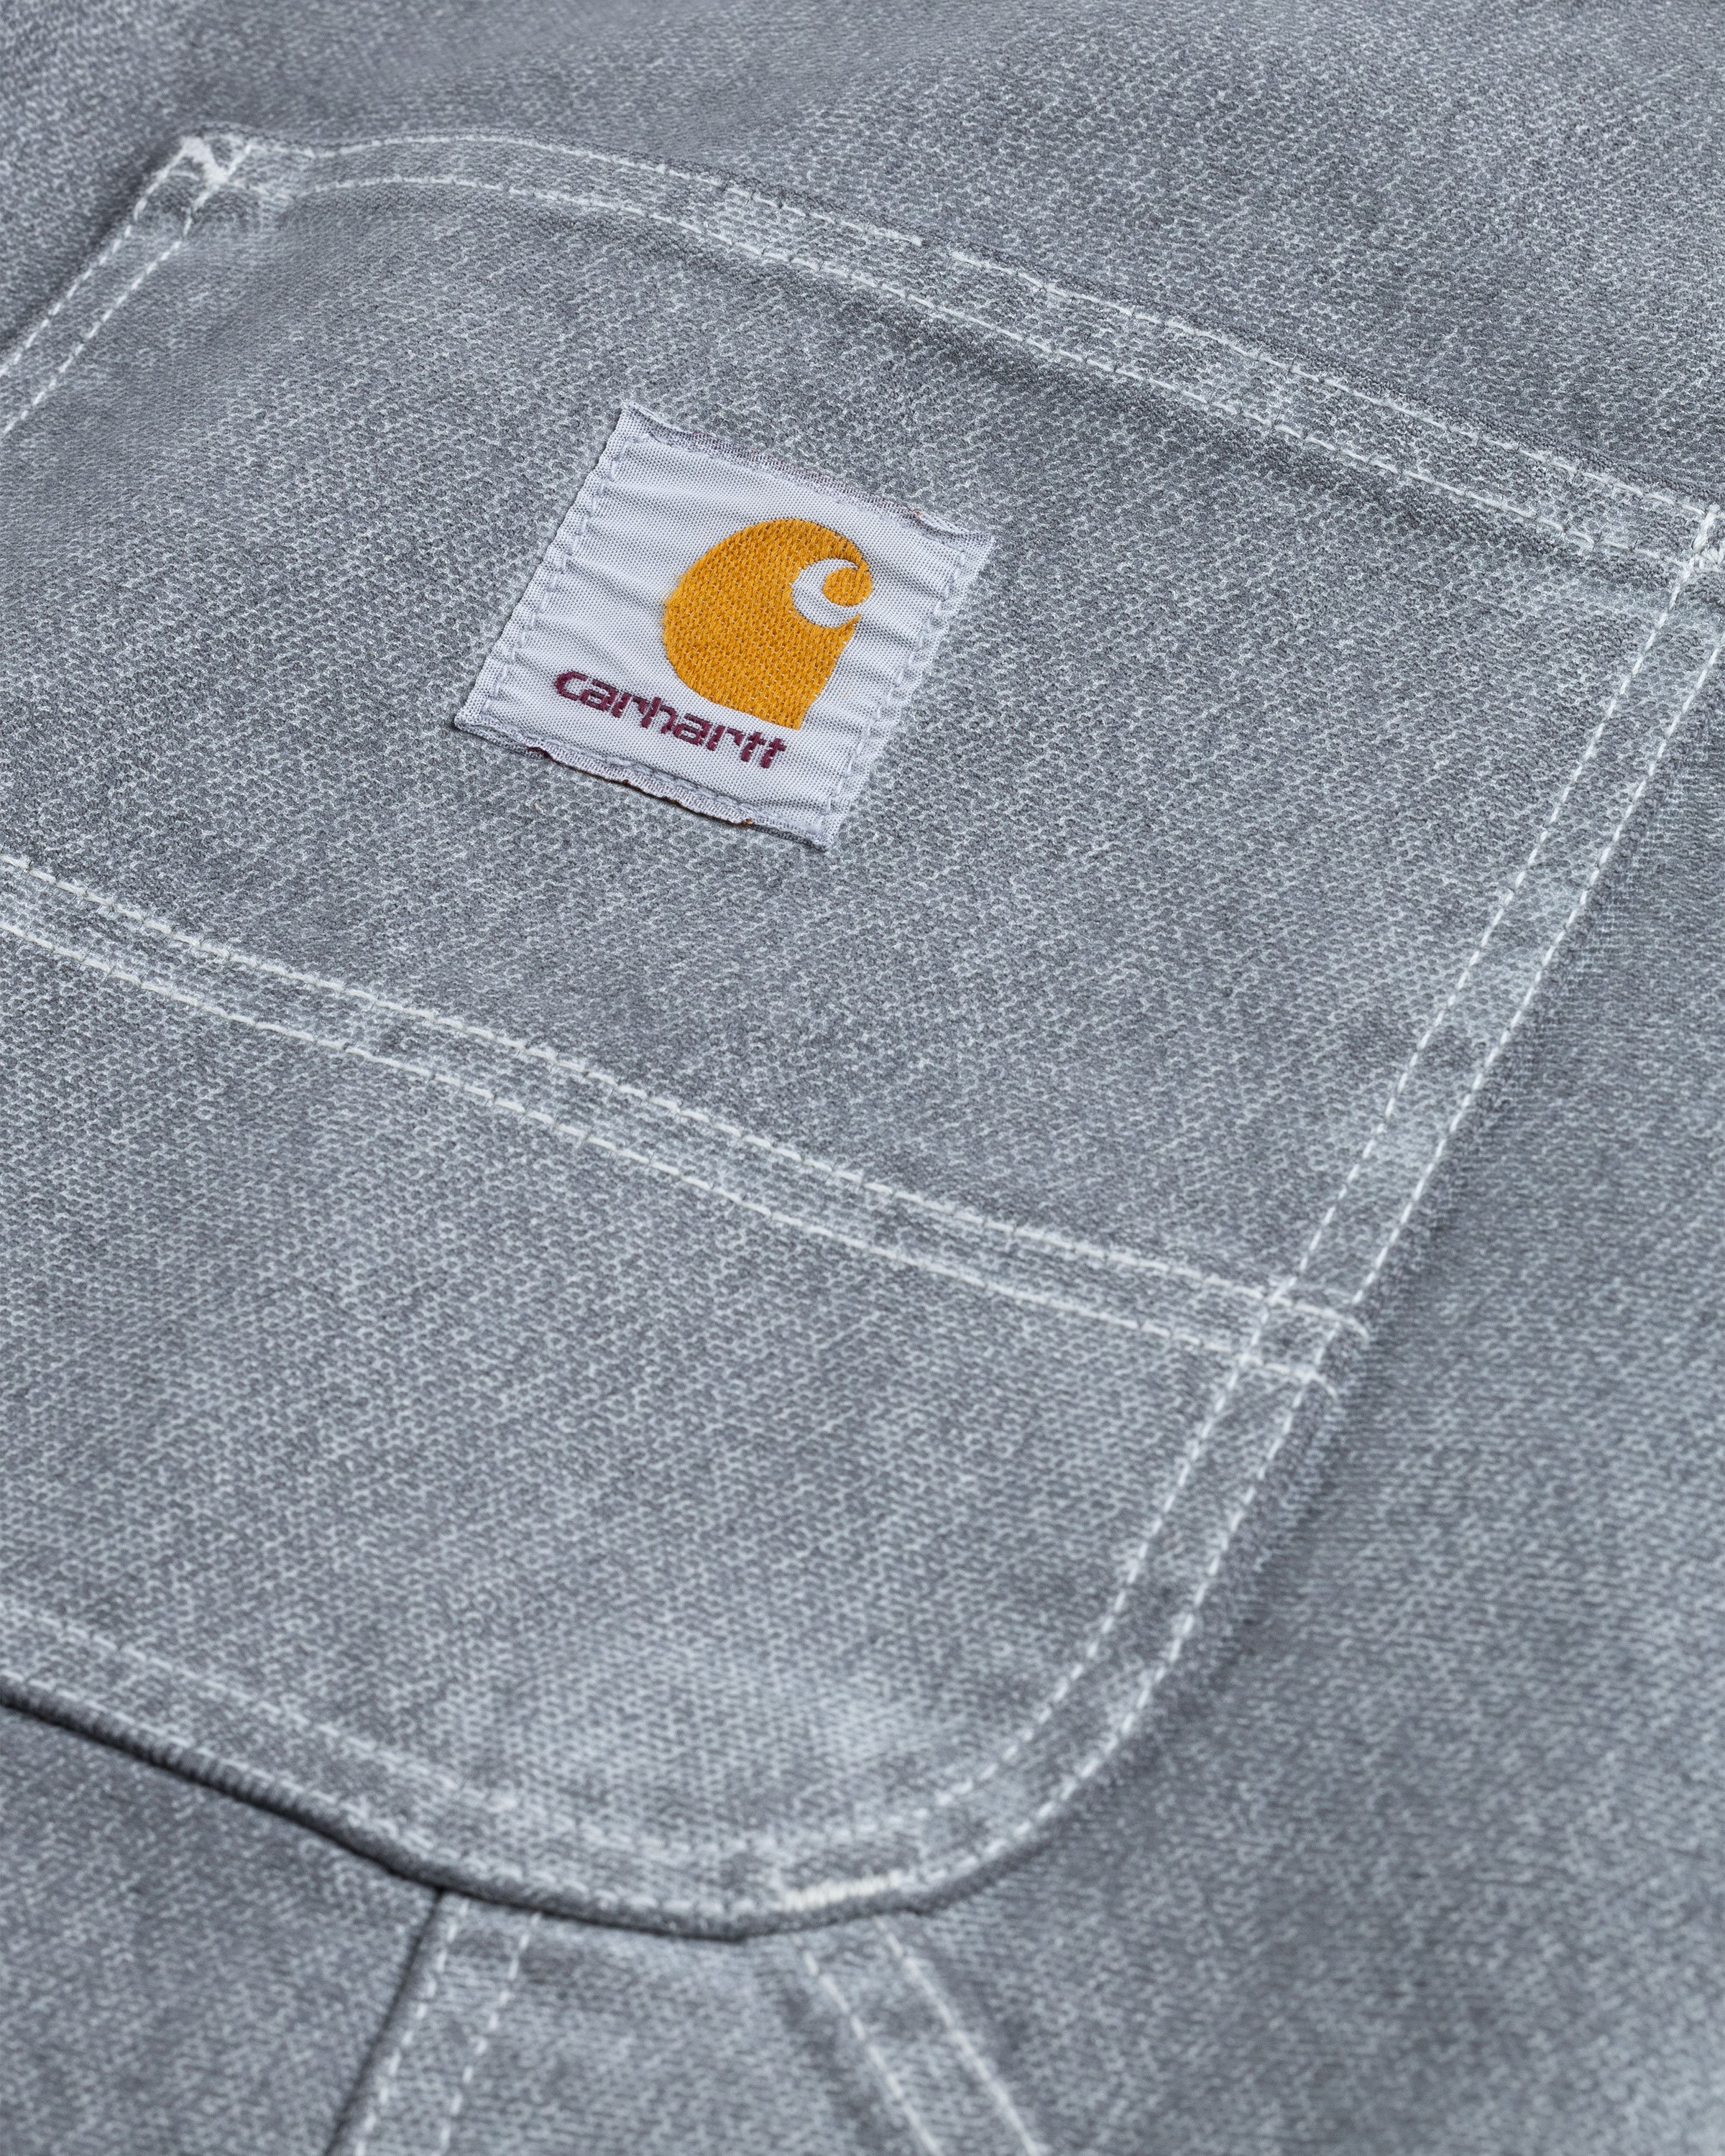 Carhartt WIP - OG Single Knee Pant Wax/Blacksmith/Stone Washed - Clothing - Grey - Image 6